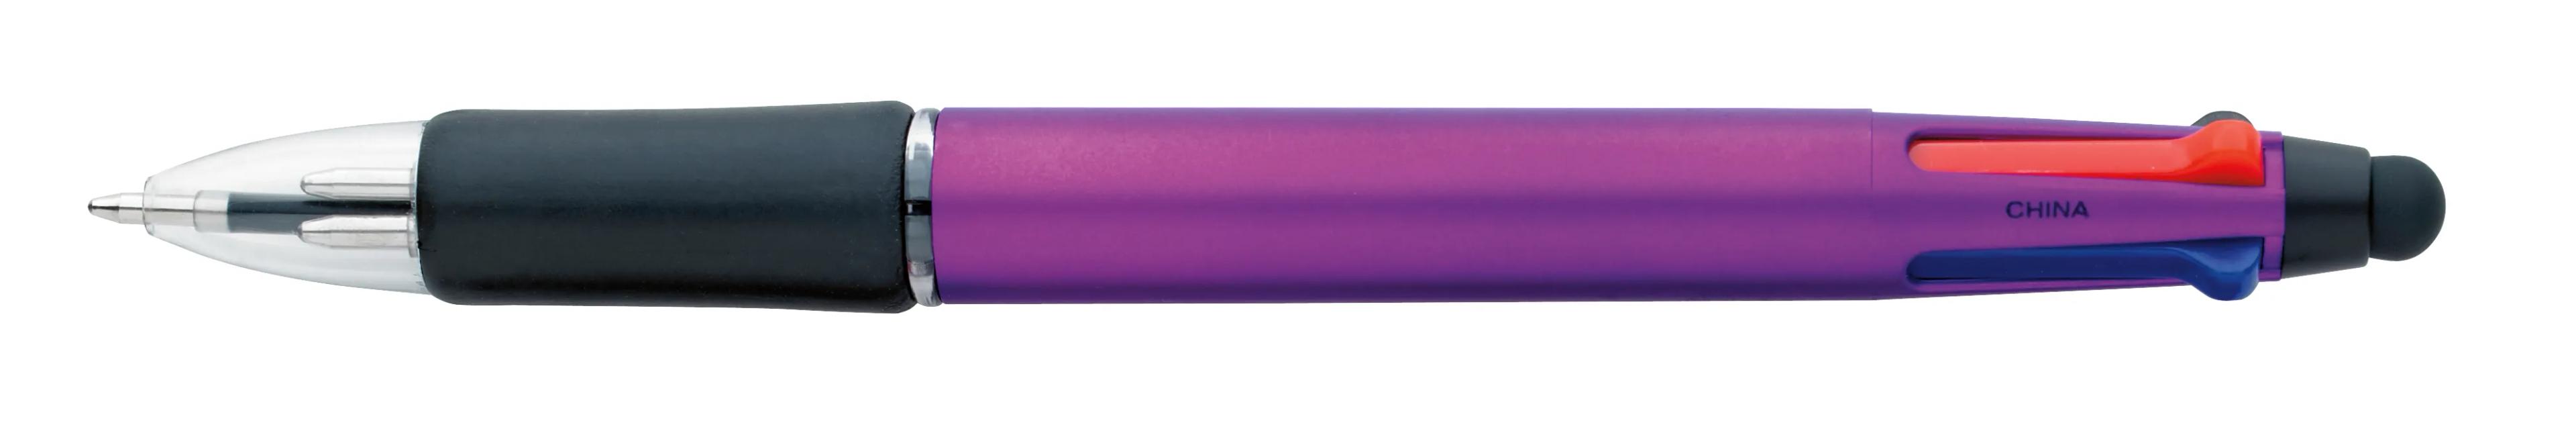 Orbitor Metallic Stylus Pen 12 of 56